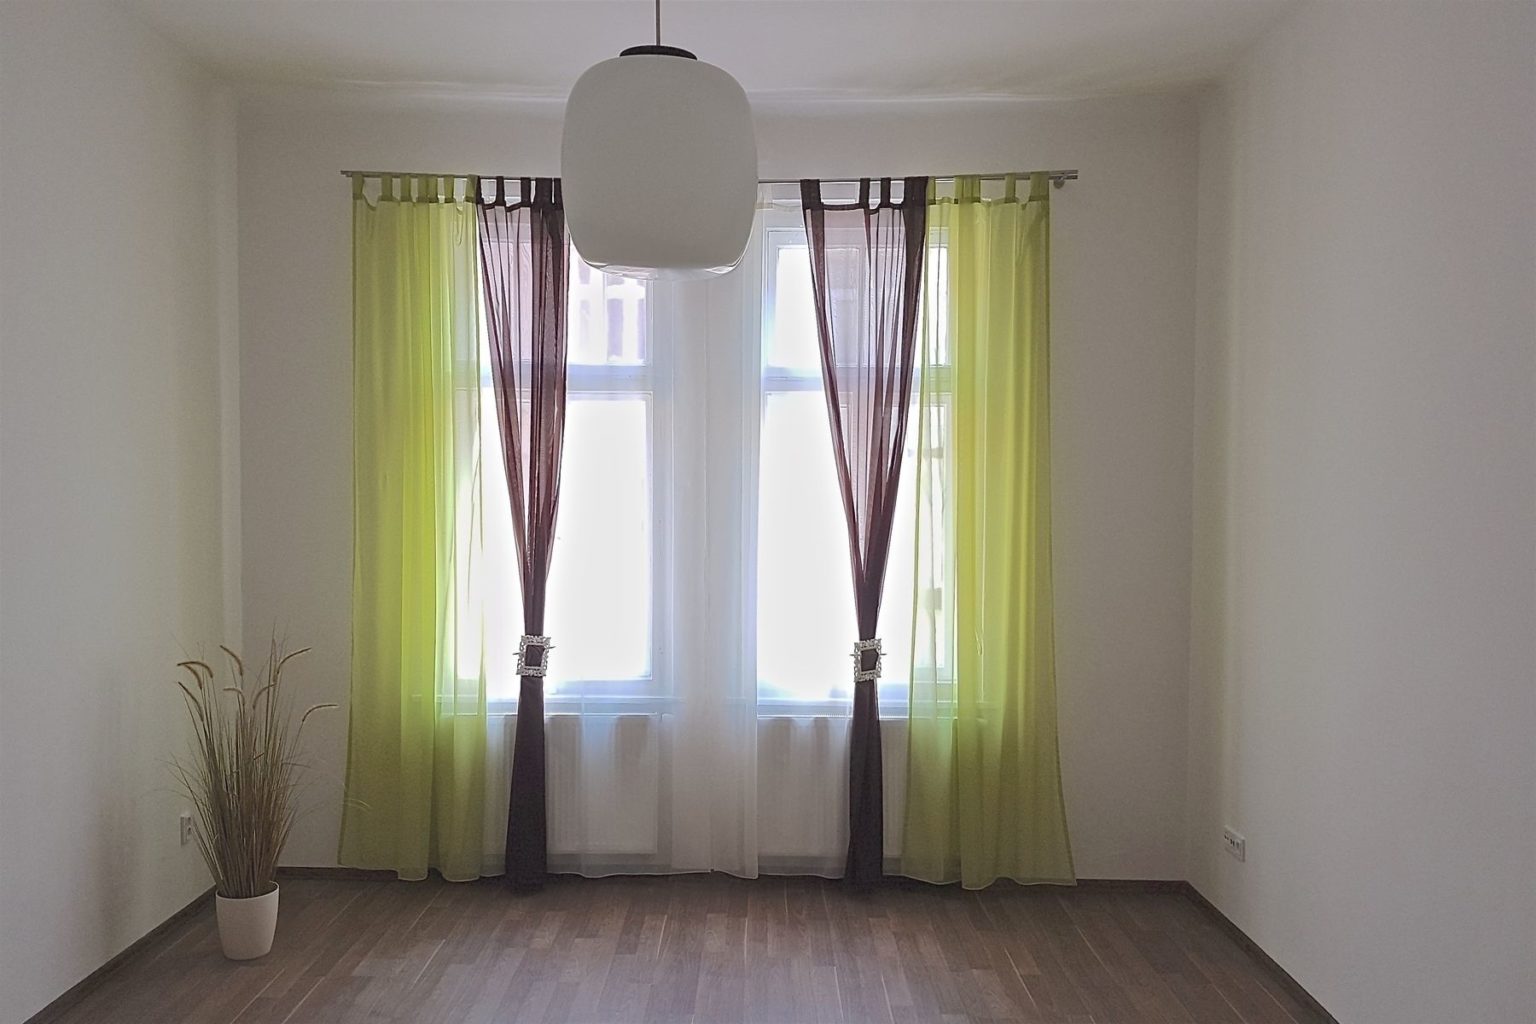 prázdná místnost s okenma zelenými a hnědými závěsy a bílé záclony